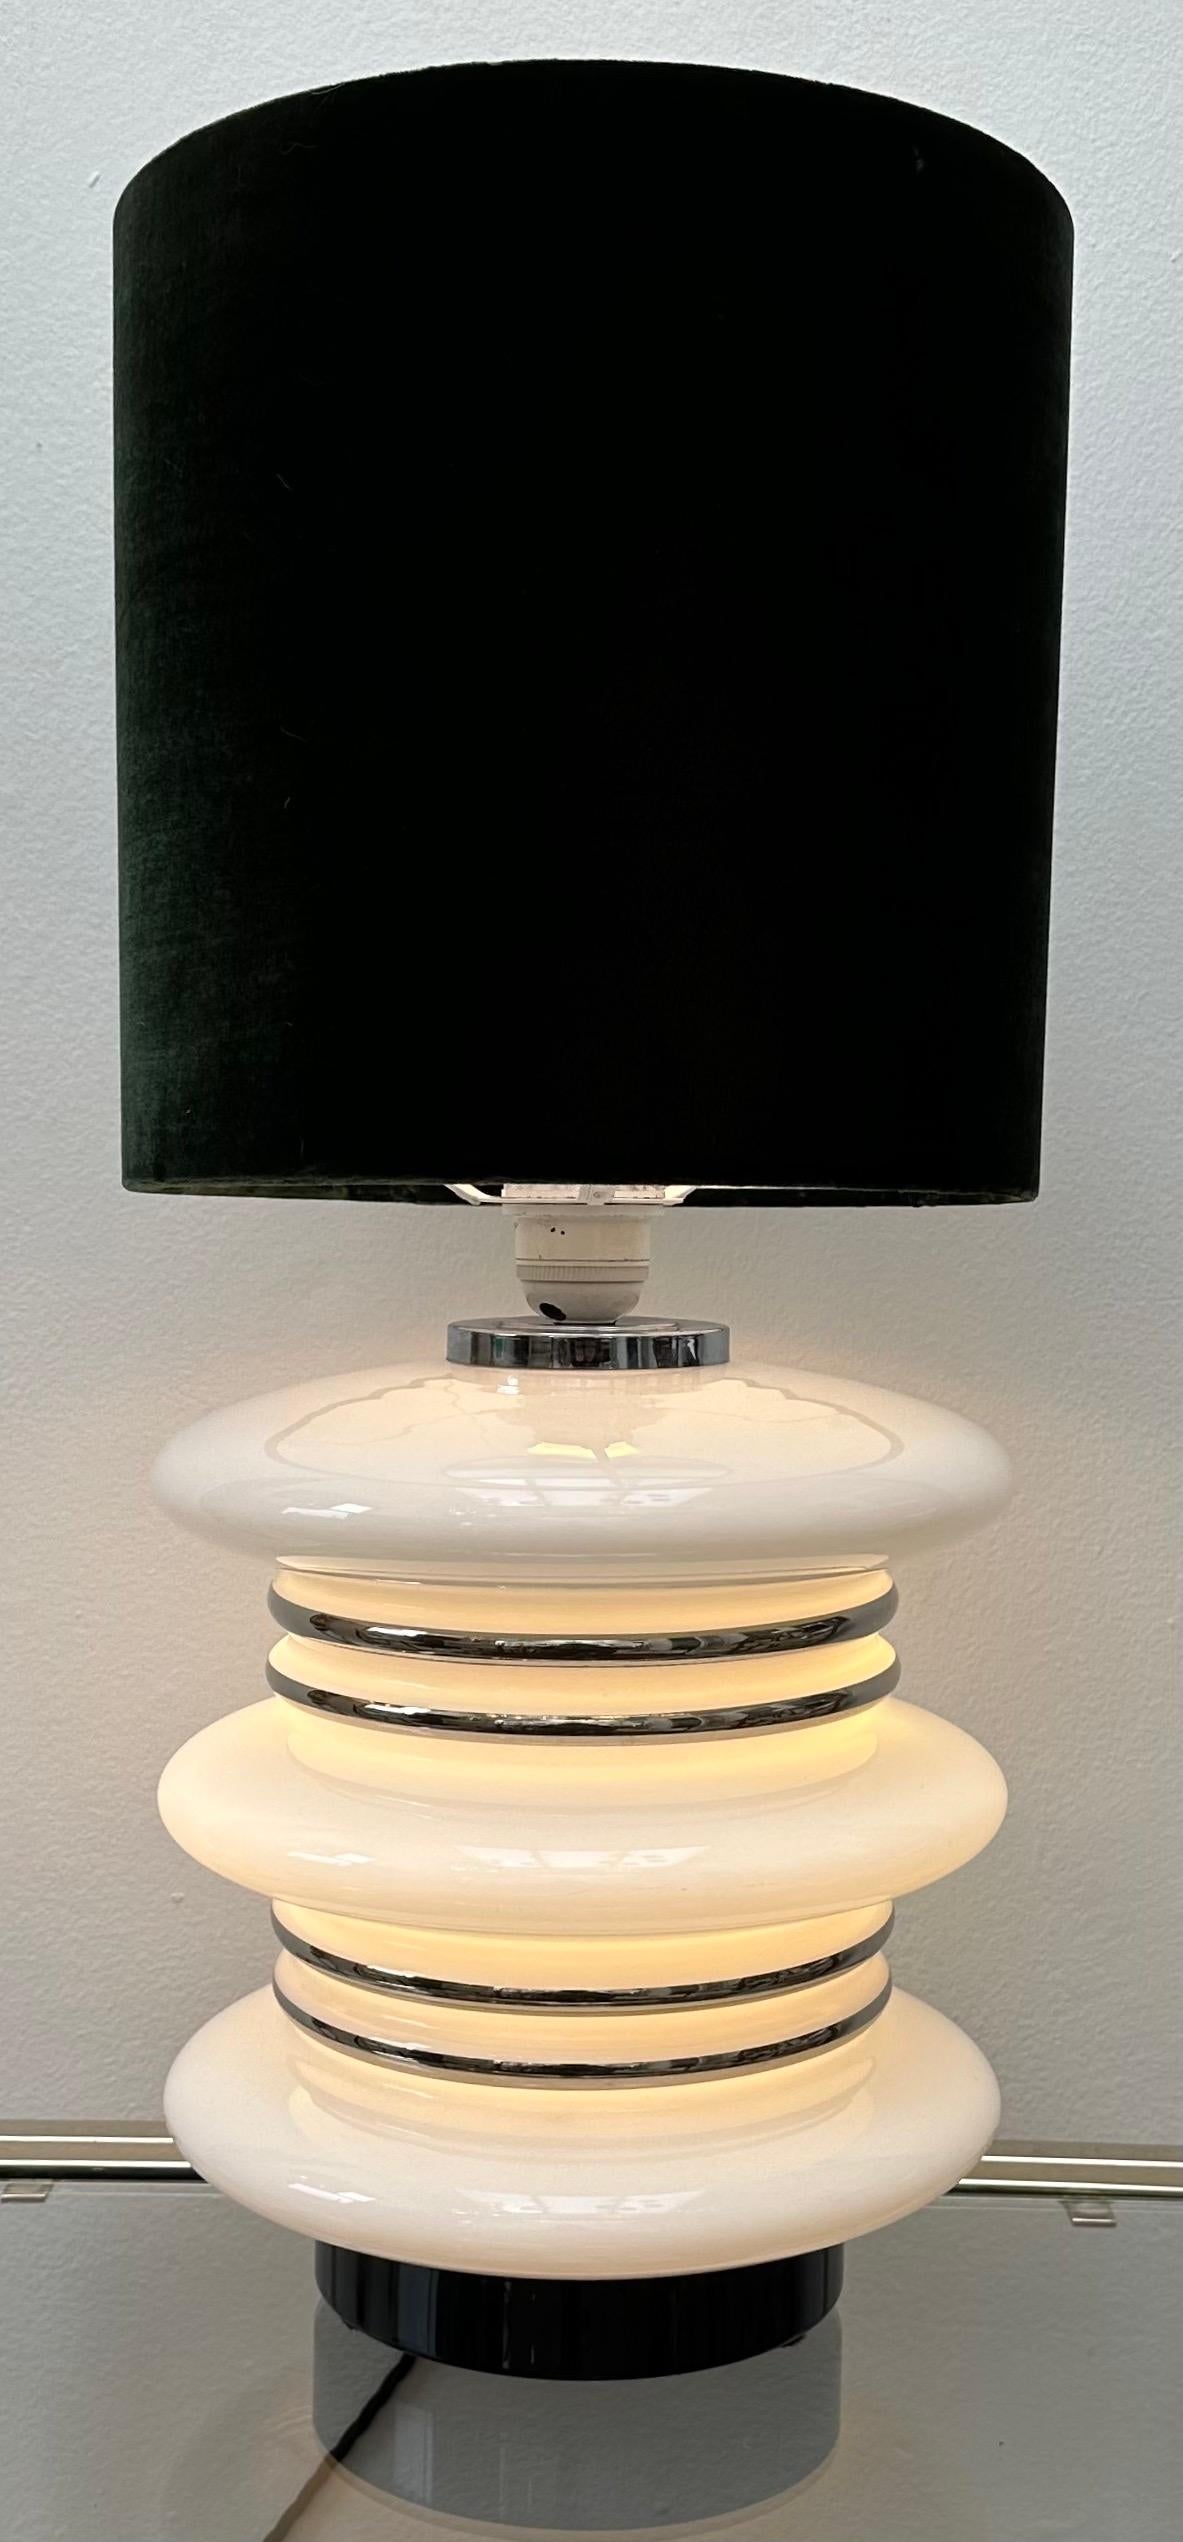 Deutsche futuristische Space-Age-Tischlampe aus weißem Opalglas und Chrom aus den 1970er Jahren, zugeschrieben Leclaire & Schäfer. Der beleuchtete Lampensockel benötigt im Inneren zwei E27-Schraubglühbirnen, die jeweils in entgegengesetzte